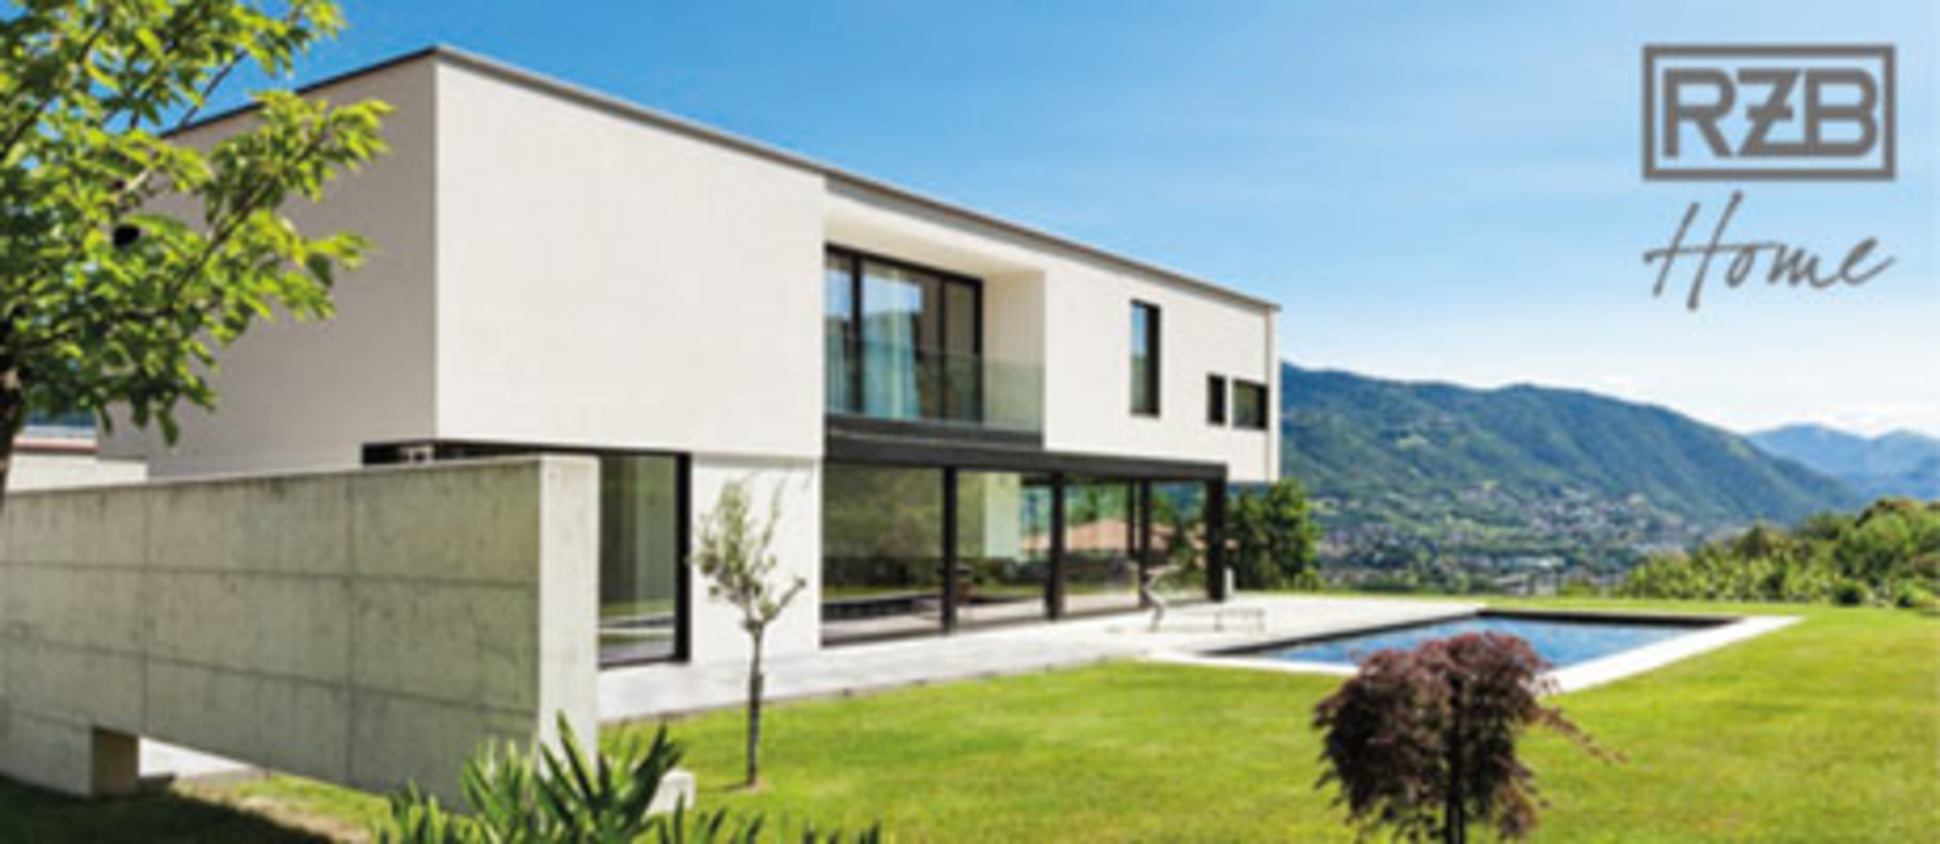 RZB Home + Basic bei Elektro Weis GmbH in Buchen-Hettingen